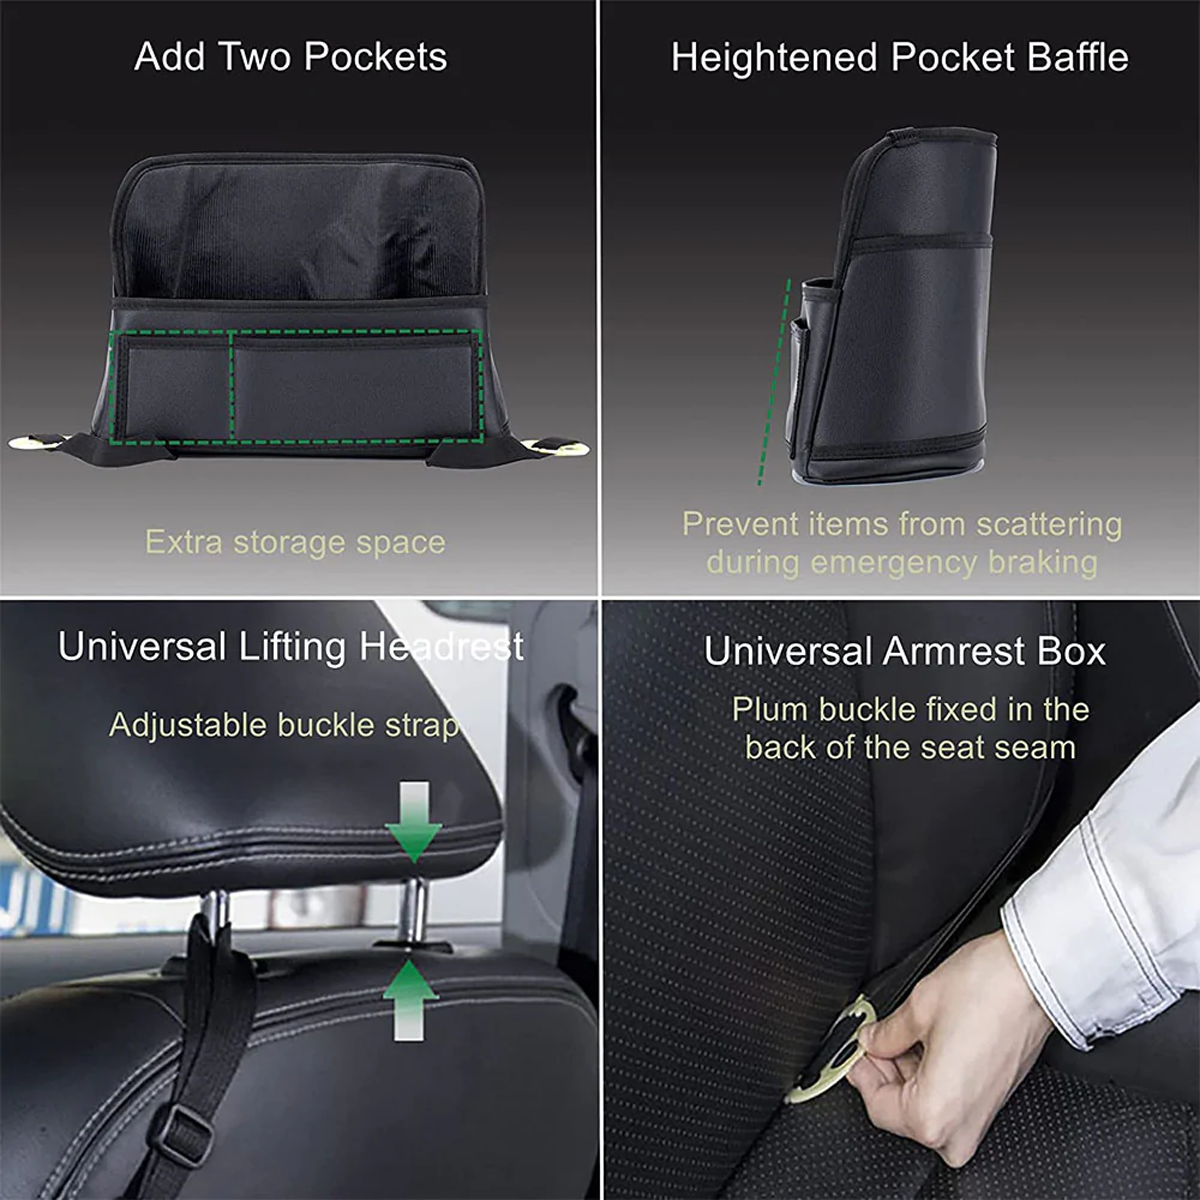 Car Purse Holder for Car Handbag Holder Between Seats Premium PU Leather, Custom Fit For Car, Hanging Car Purse Storage Pocket Back Seat Pet Barrier DLMA223